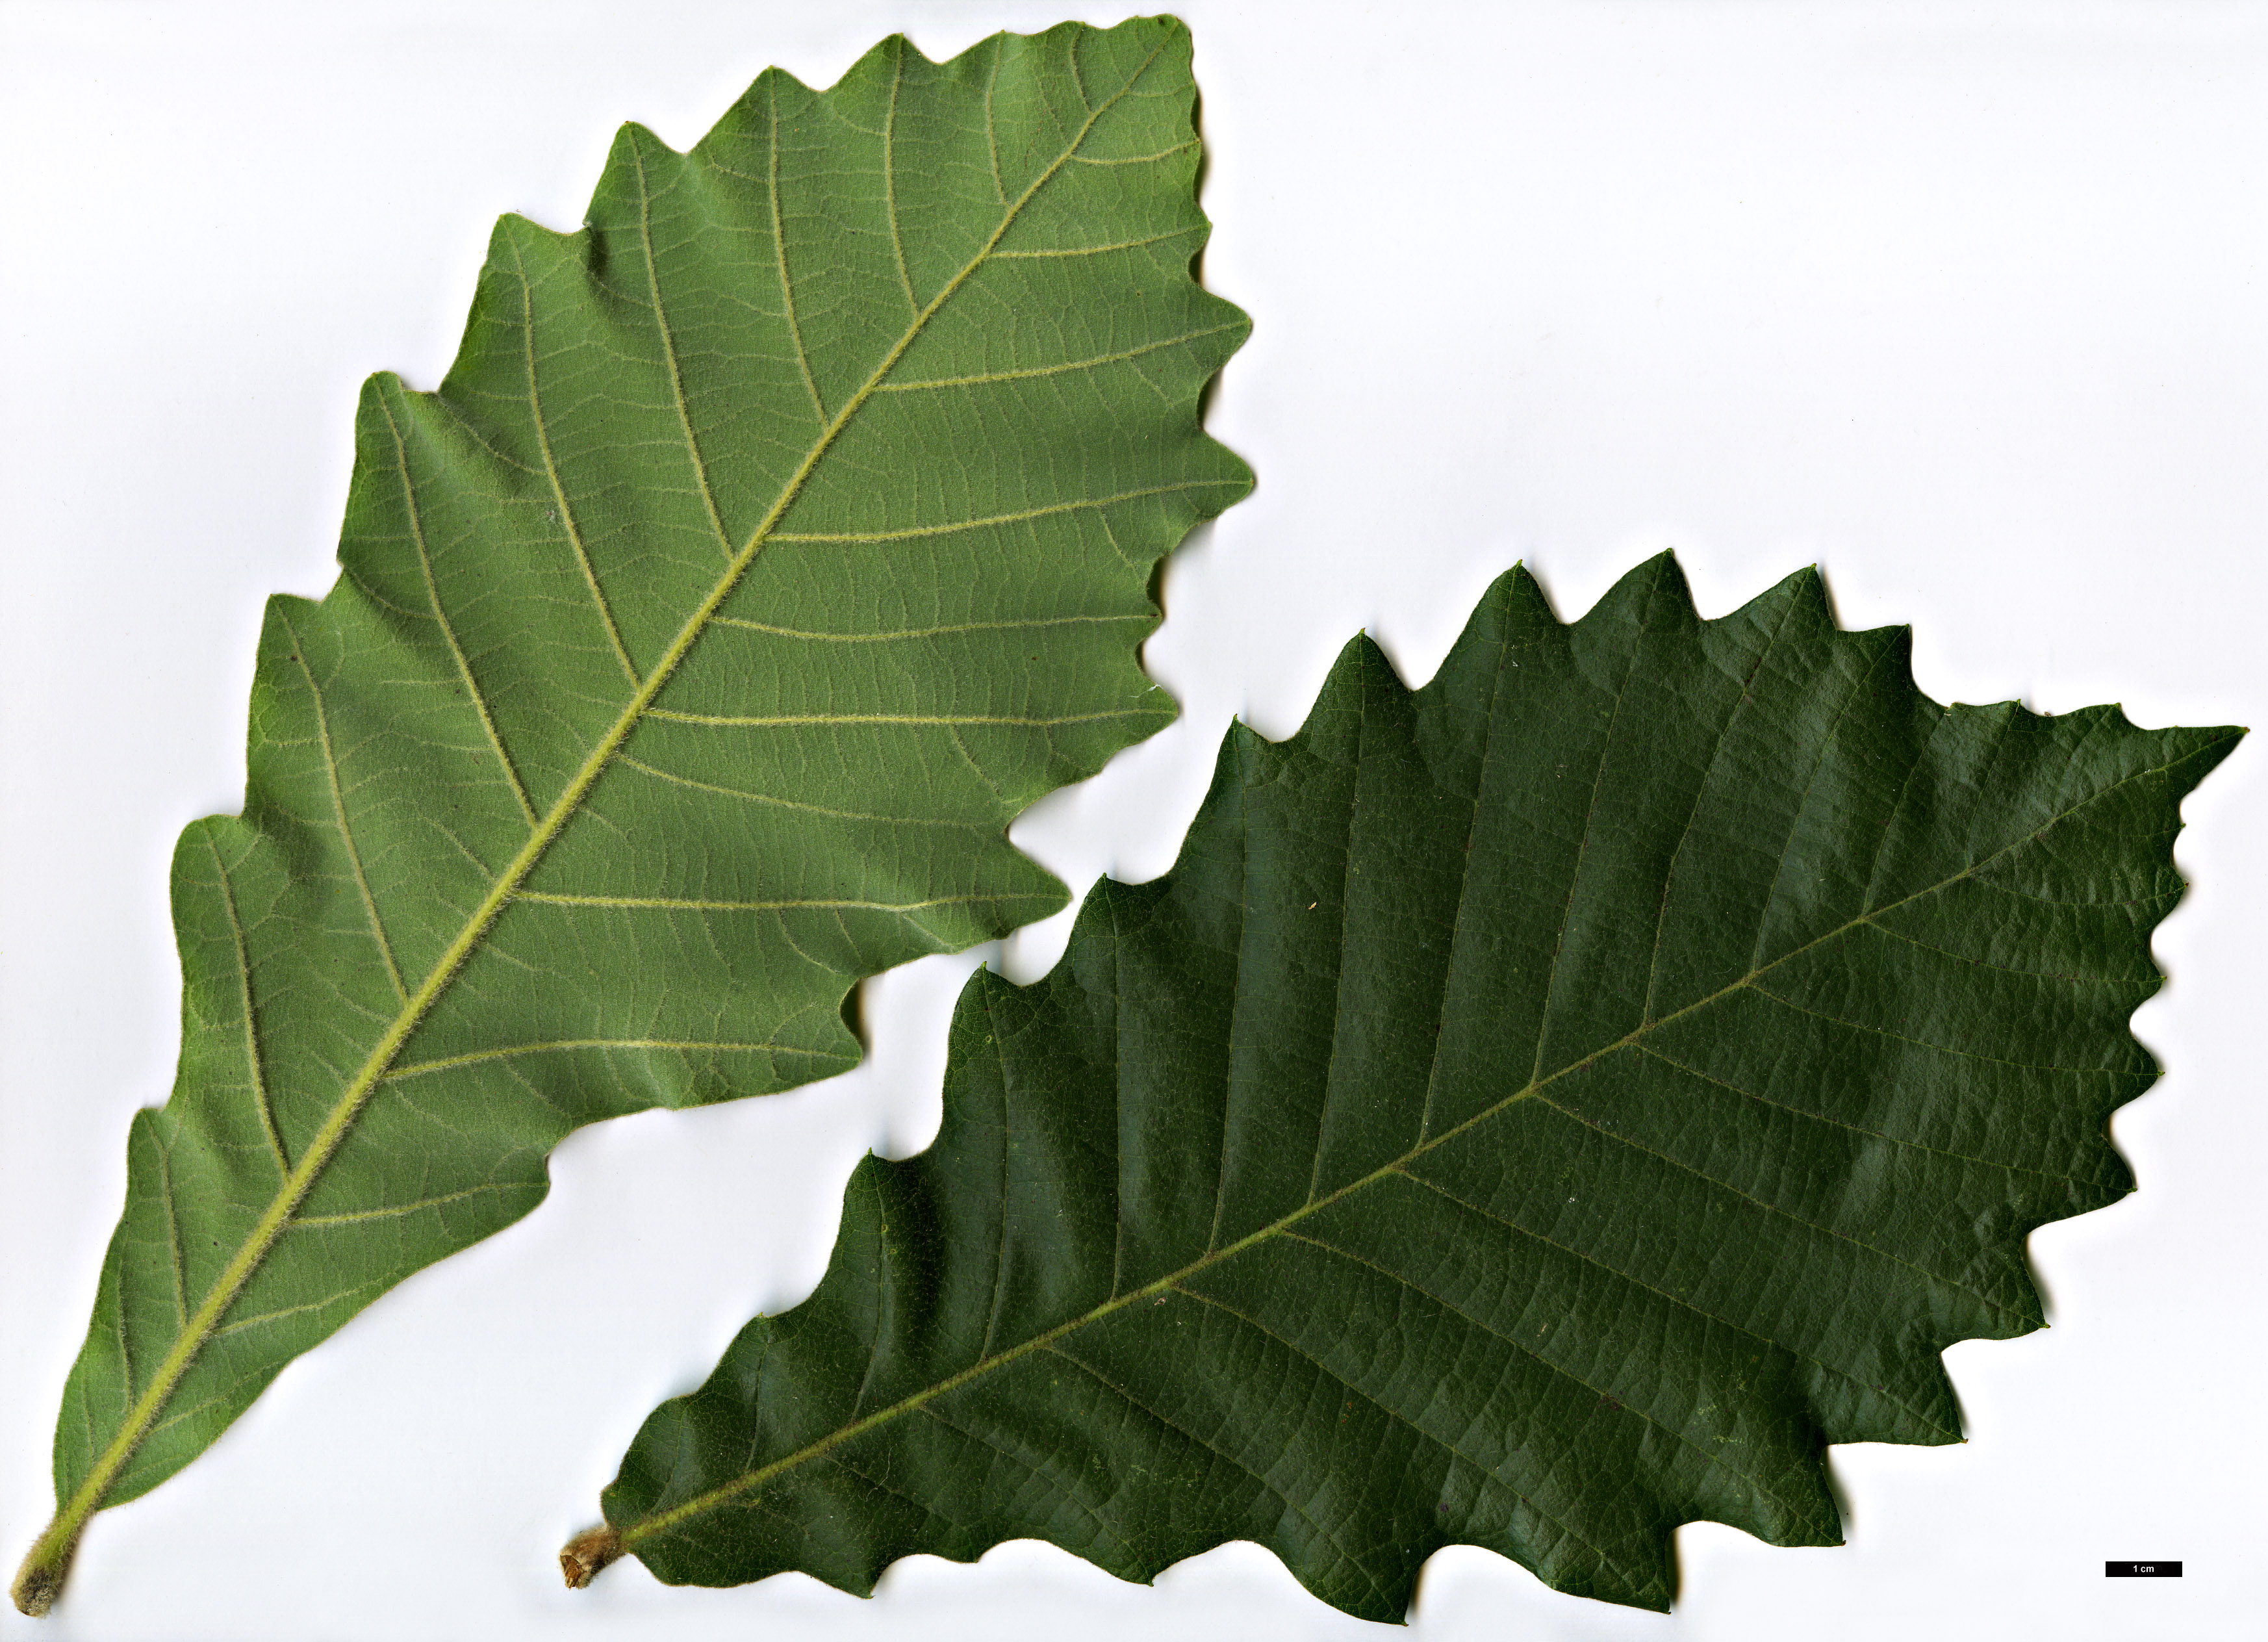 High resolution image: Family: Fagaceae - Genus: Quercus - Taxon: aliena × dentata subsp. yunnanensis